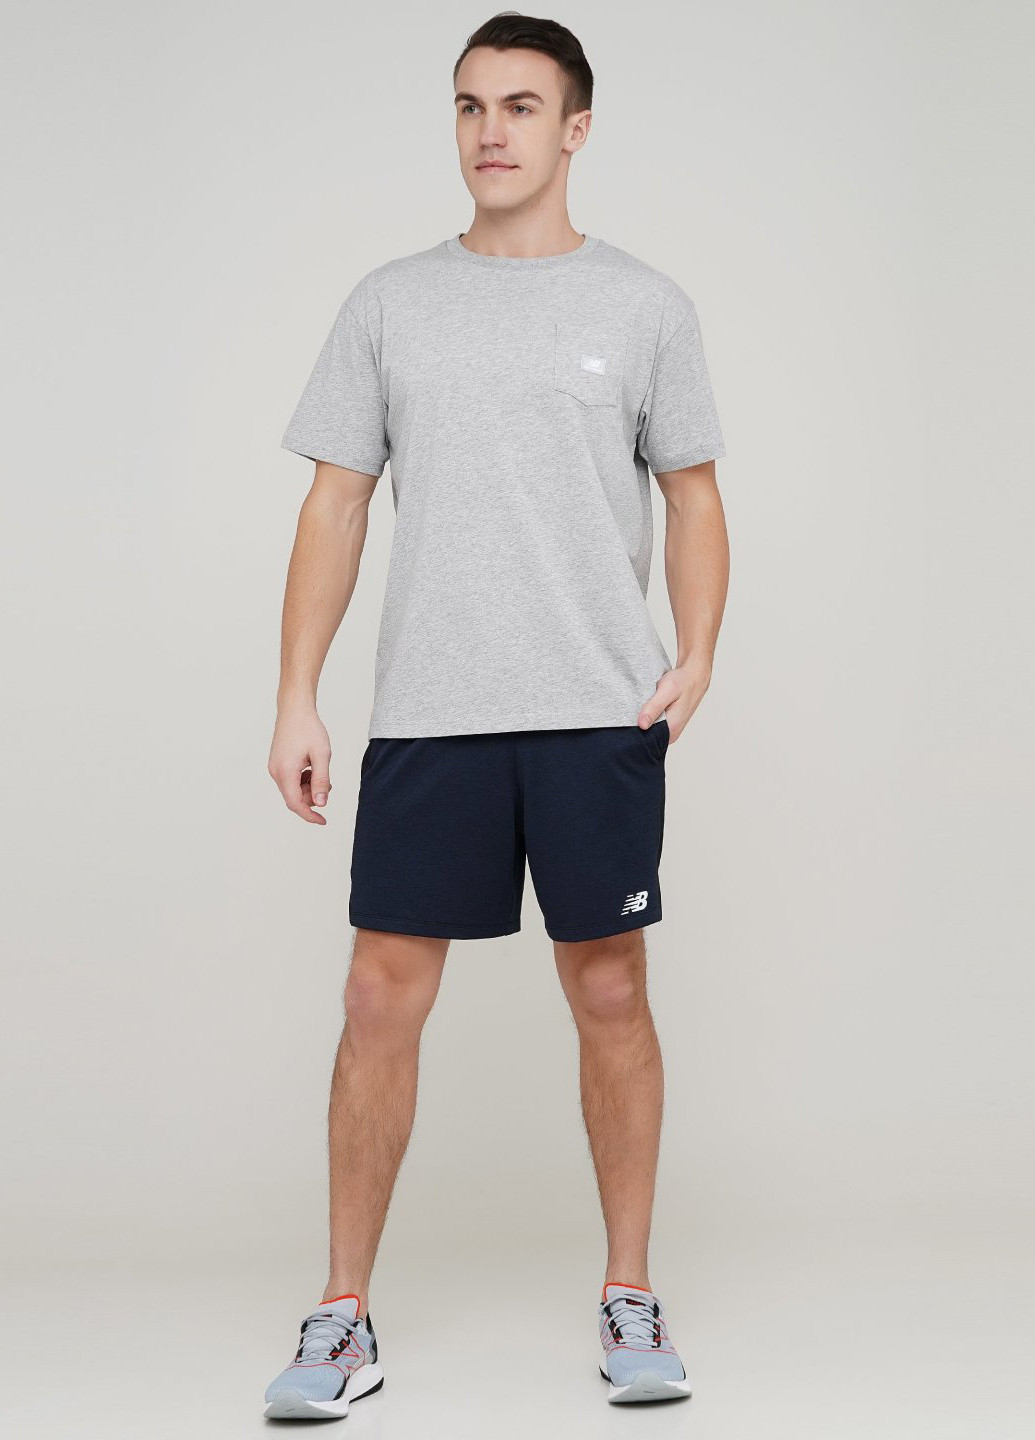 Світло-сіра футболка New Balance Nb Athletics Pocket